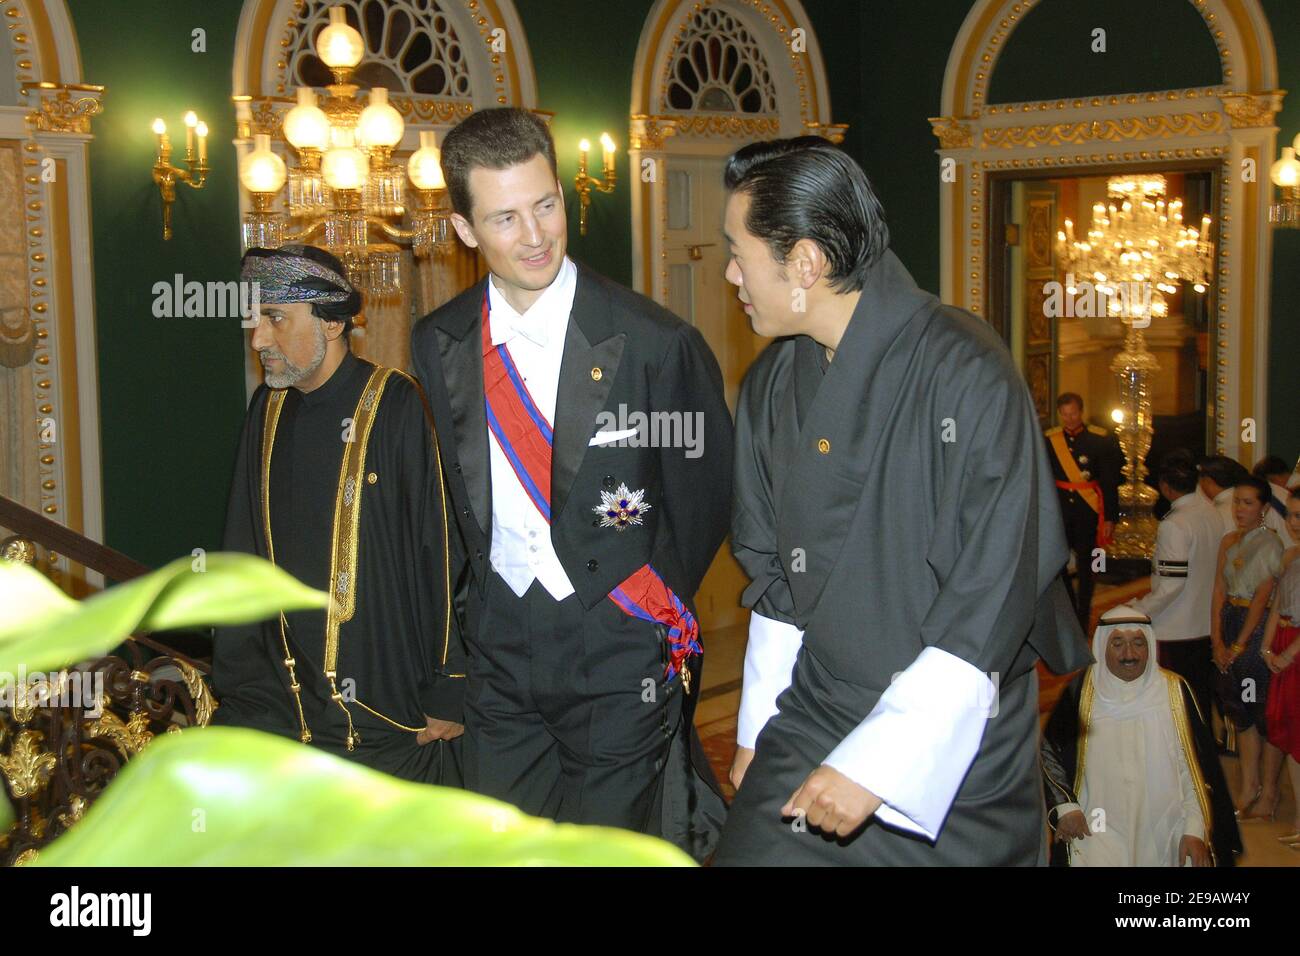 Le prince Alois du Liechtenstein et le roi Jigme Khesar Namgyel Wangchuck de Bouthan assistent à la cérémonie célébrant le 60e anniversaire de son règne, à Bangkok, le 13 juin 2006. Photo de Patrick Durand/Pool/ABACAPRESS.COM Banque D'Images